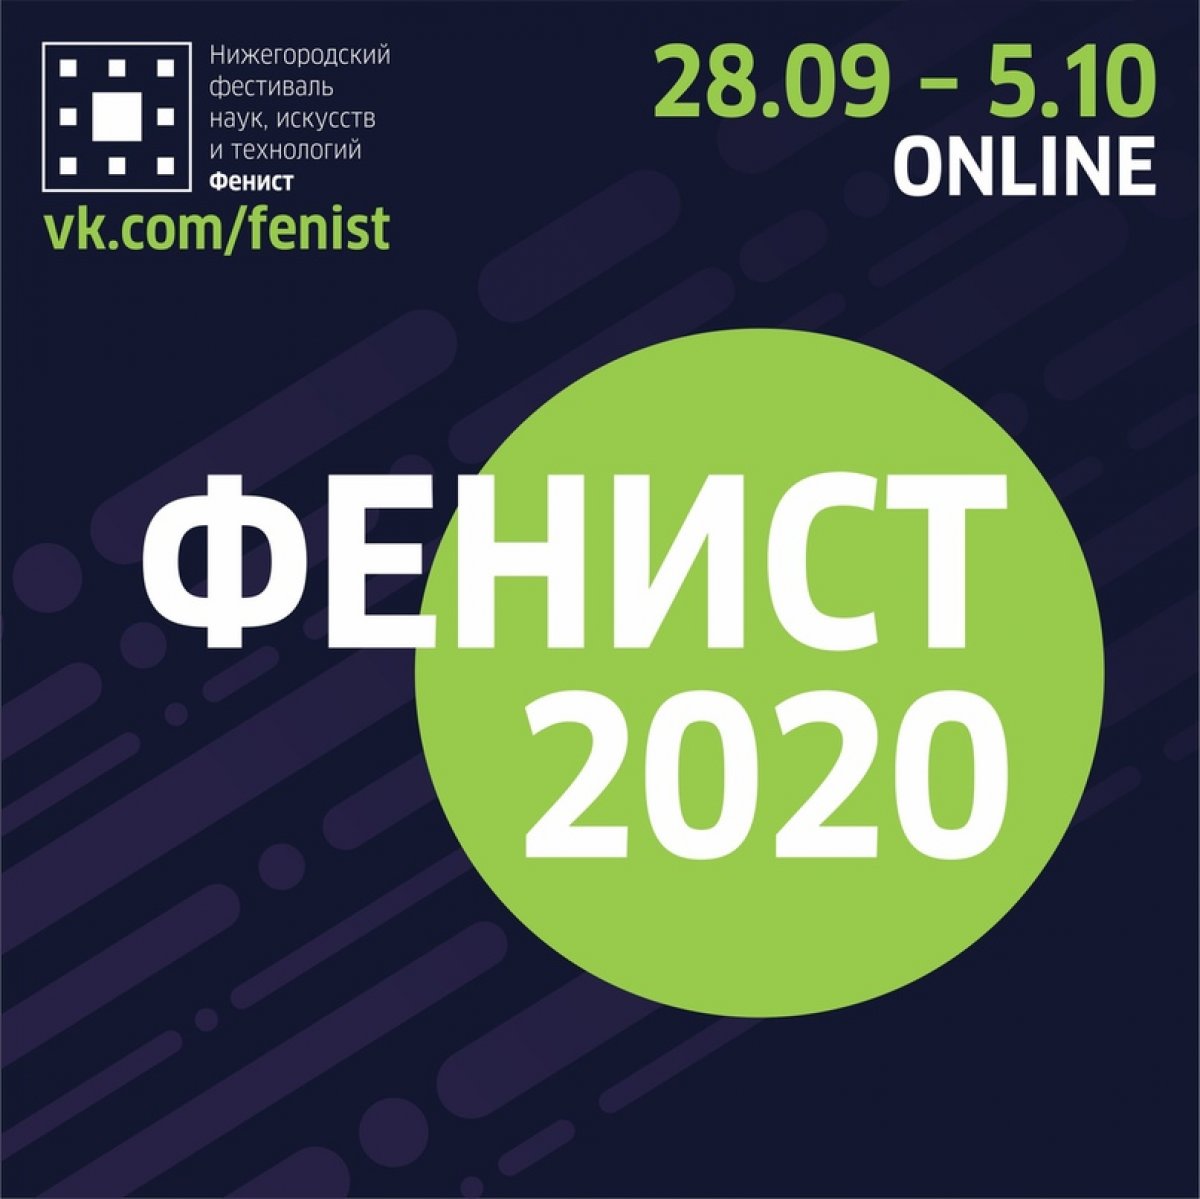 Нижегородский фестиваль наук, искусств и технологий «Фенист» пройдет в онлайн-формате с 28 сентября по 5 октября